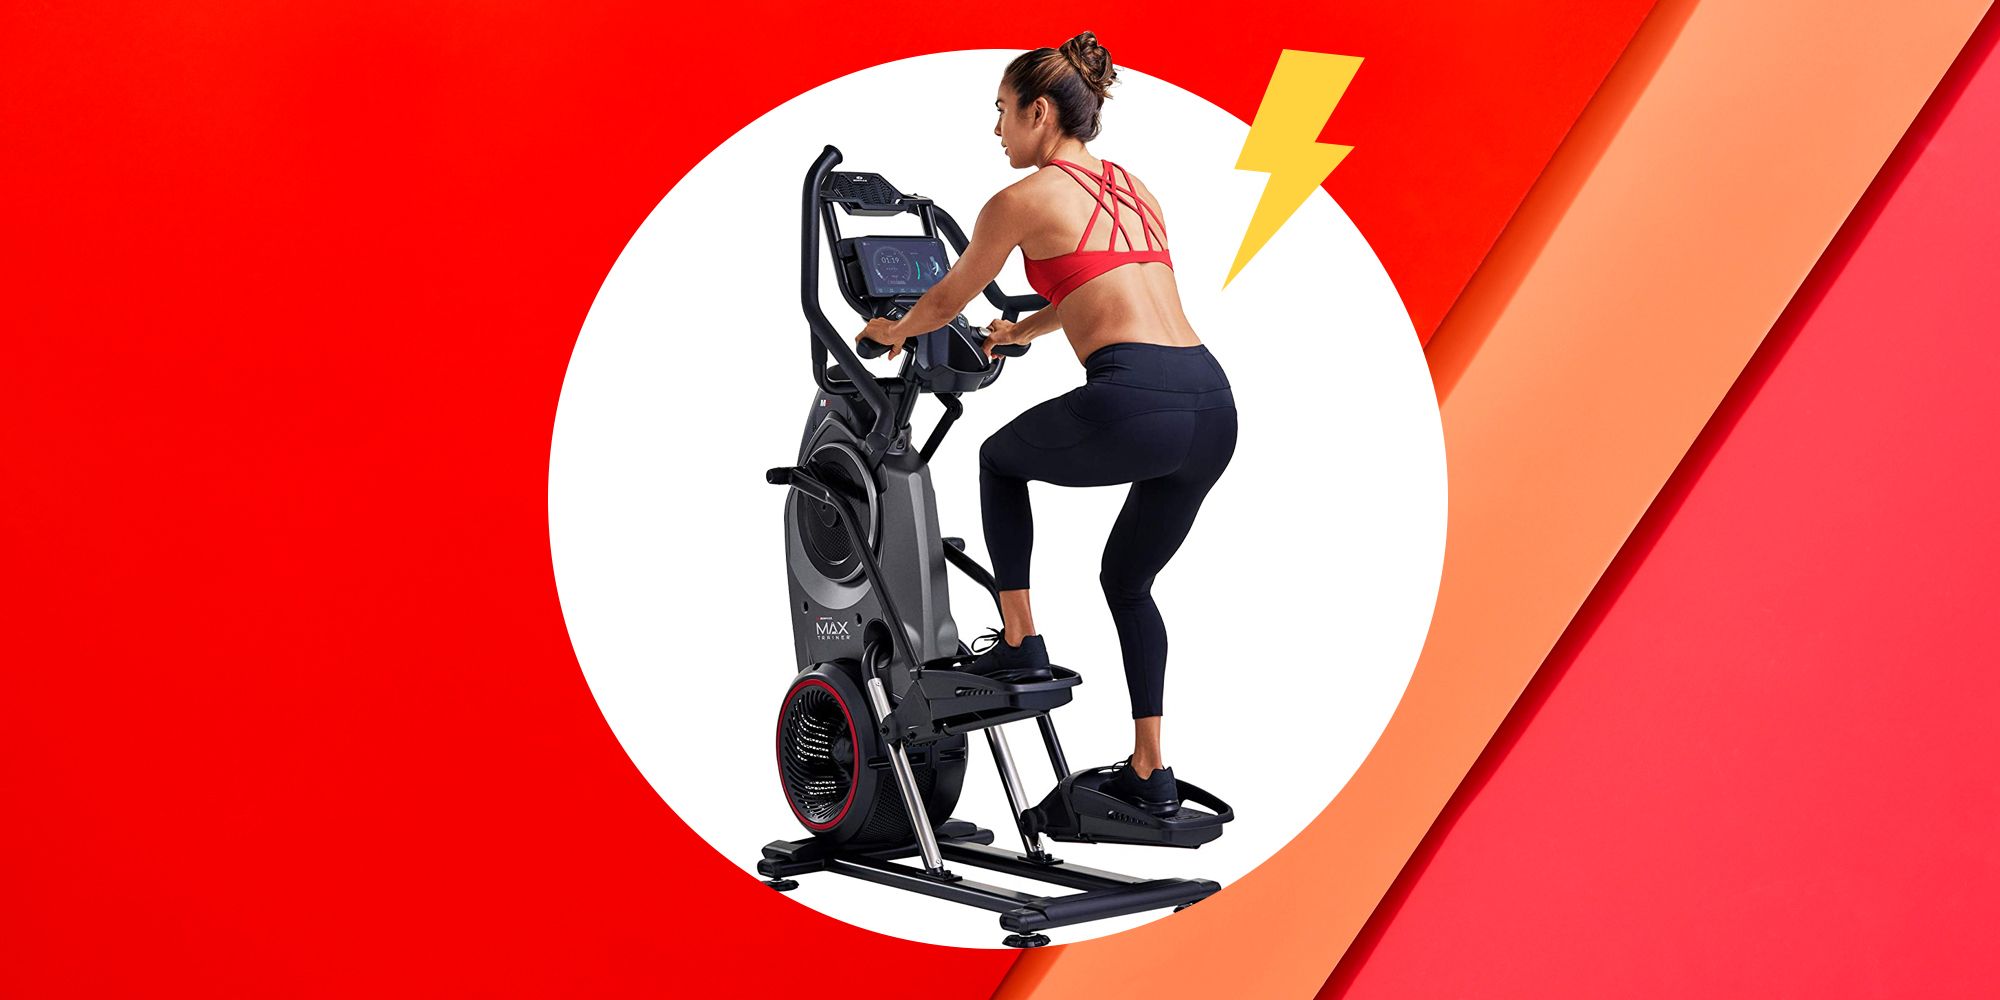 Stair Stepper Climber Exercise Machine Cardio Equipment Home Gym Fitness 2020 